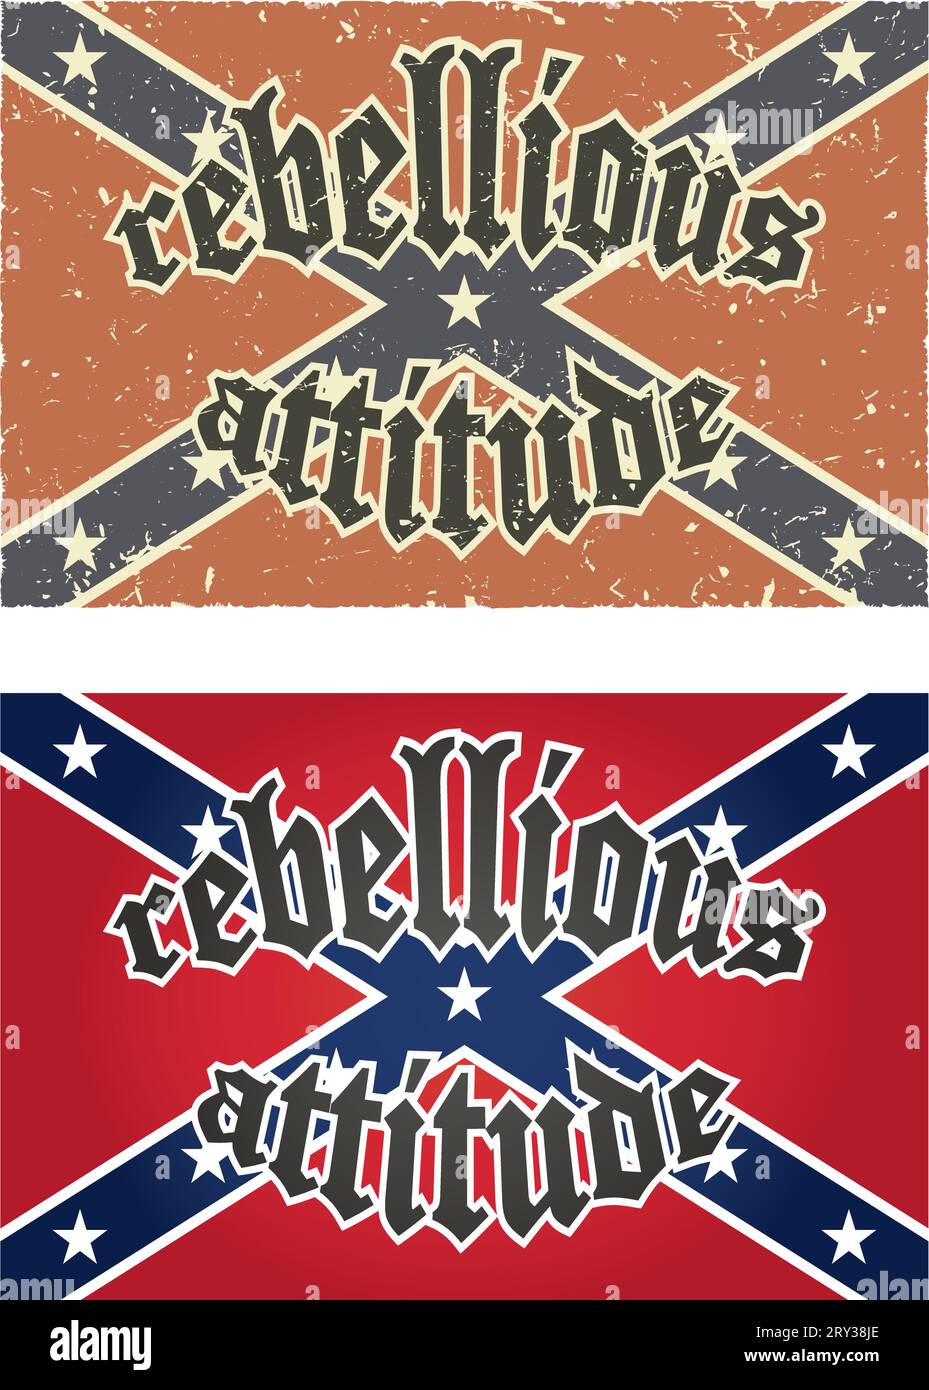 Rebellious attitude-confederate rebel flags Stock Vector